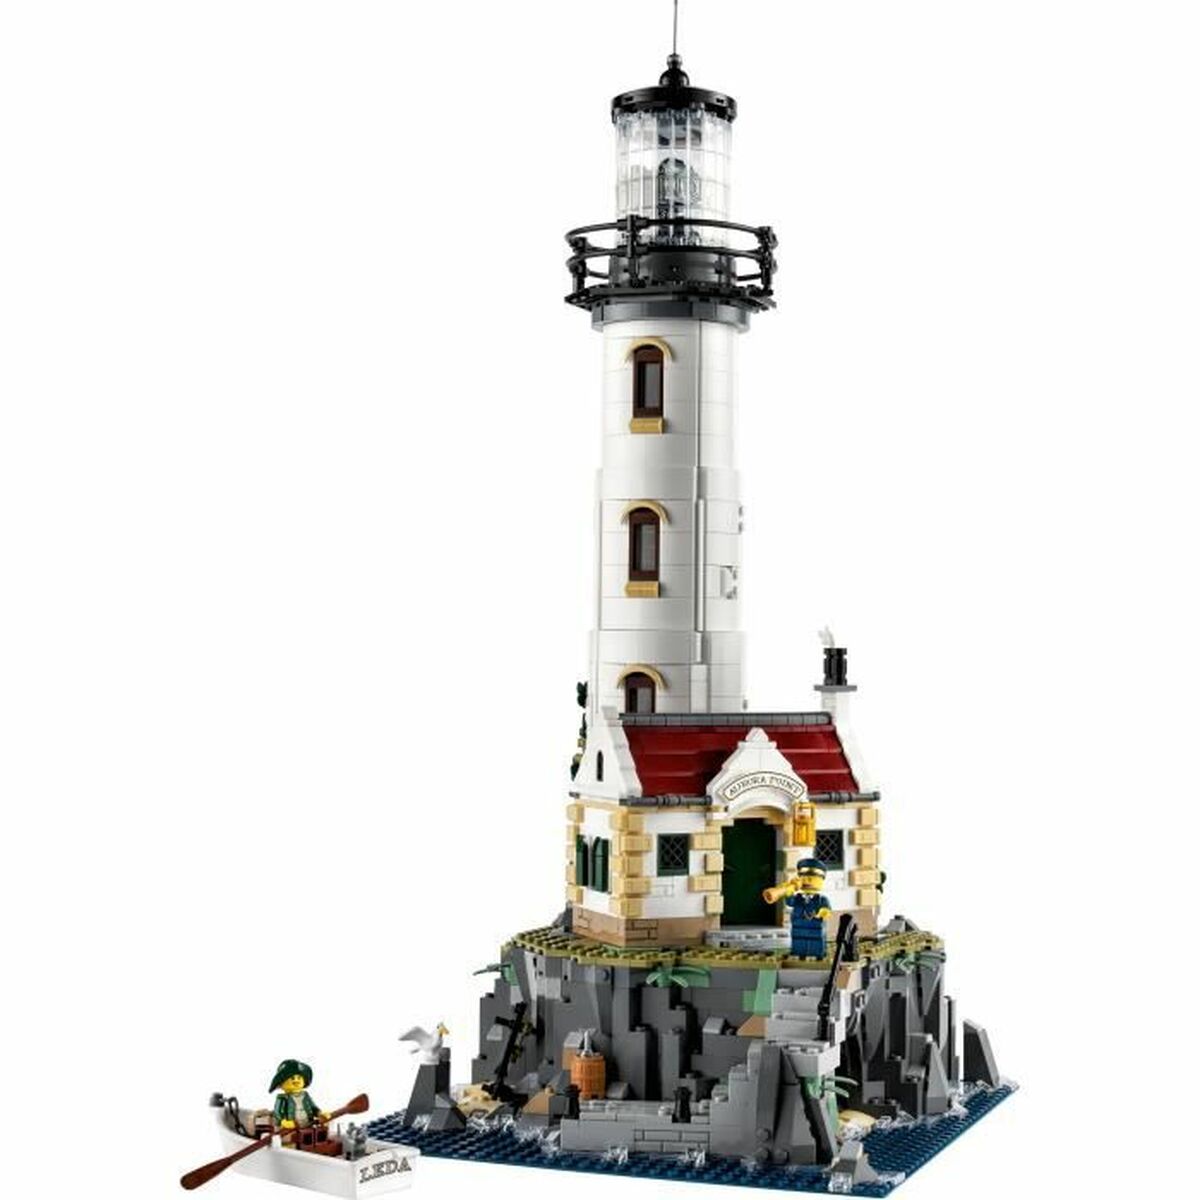 Lego Lighthouse